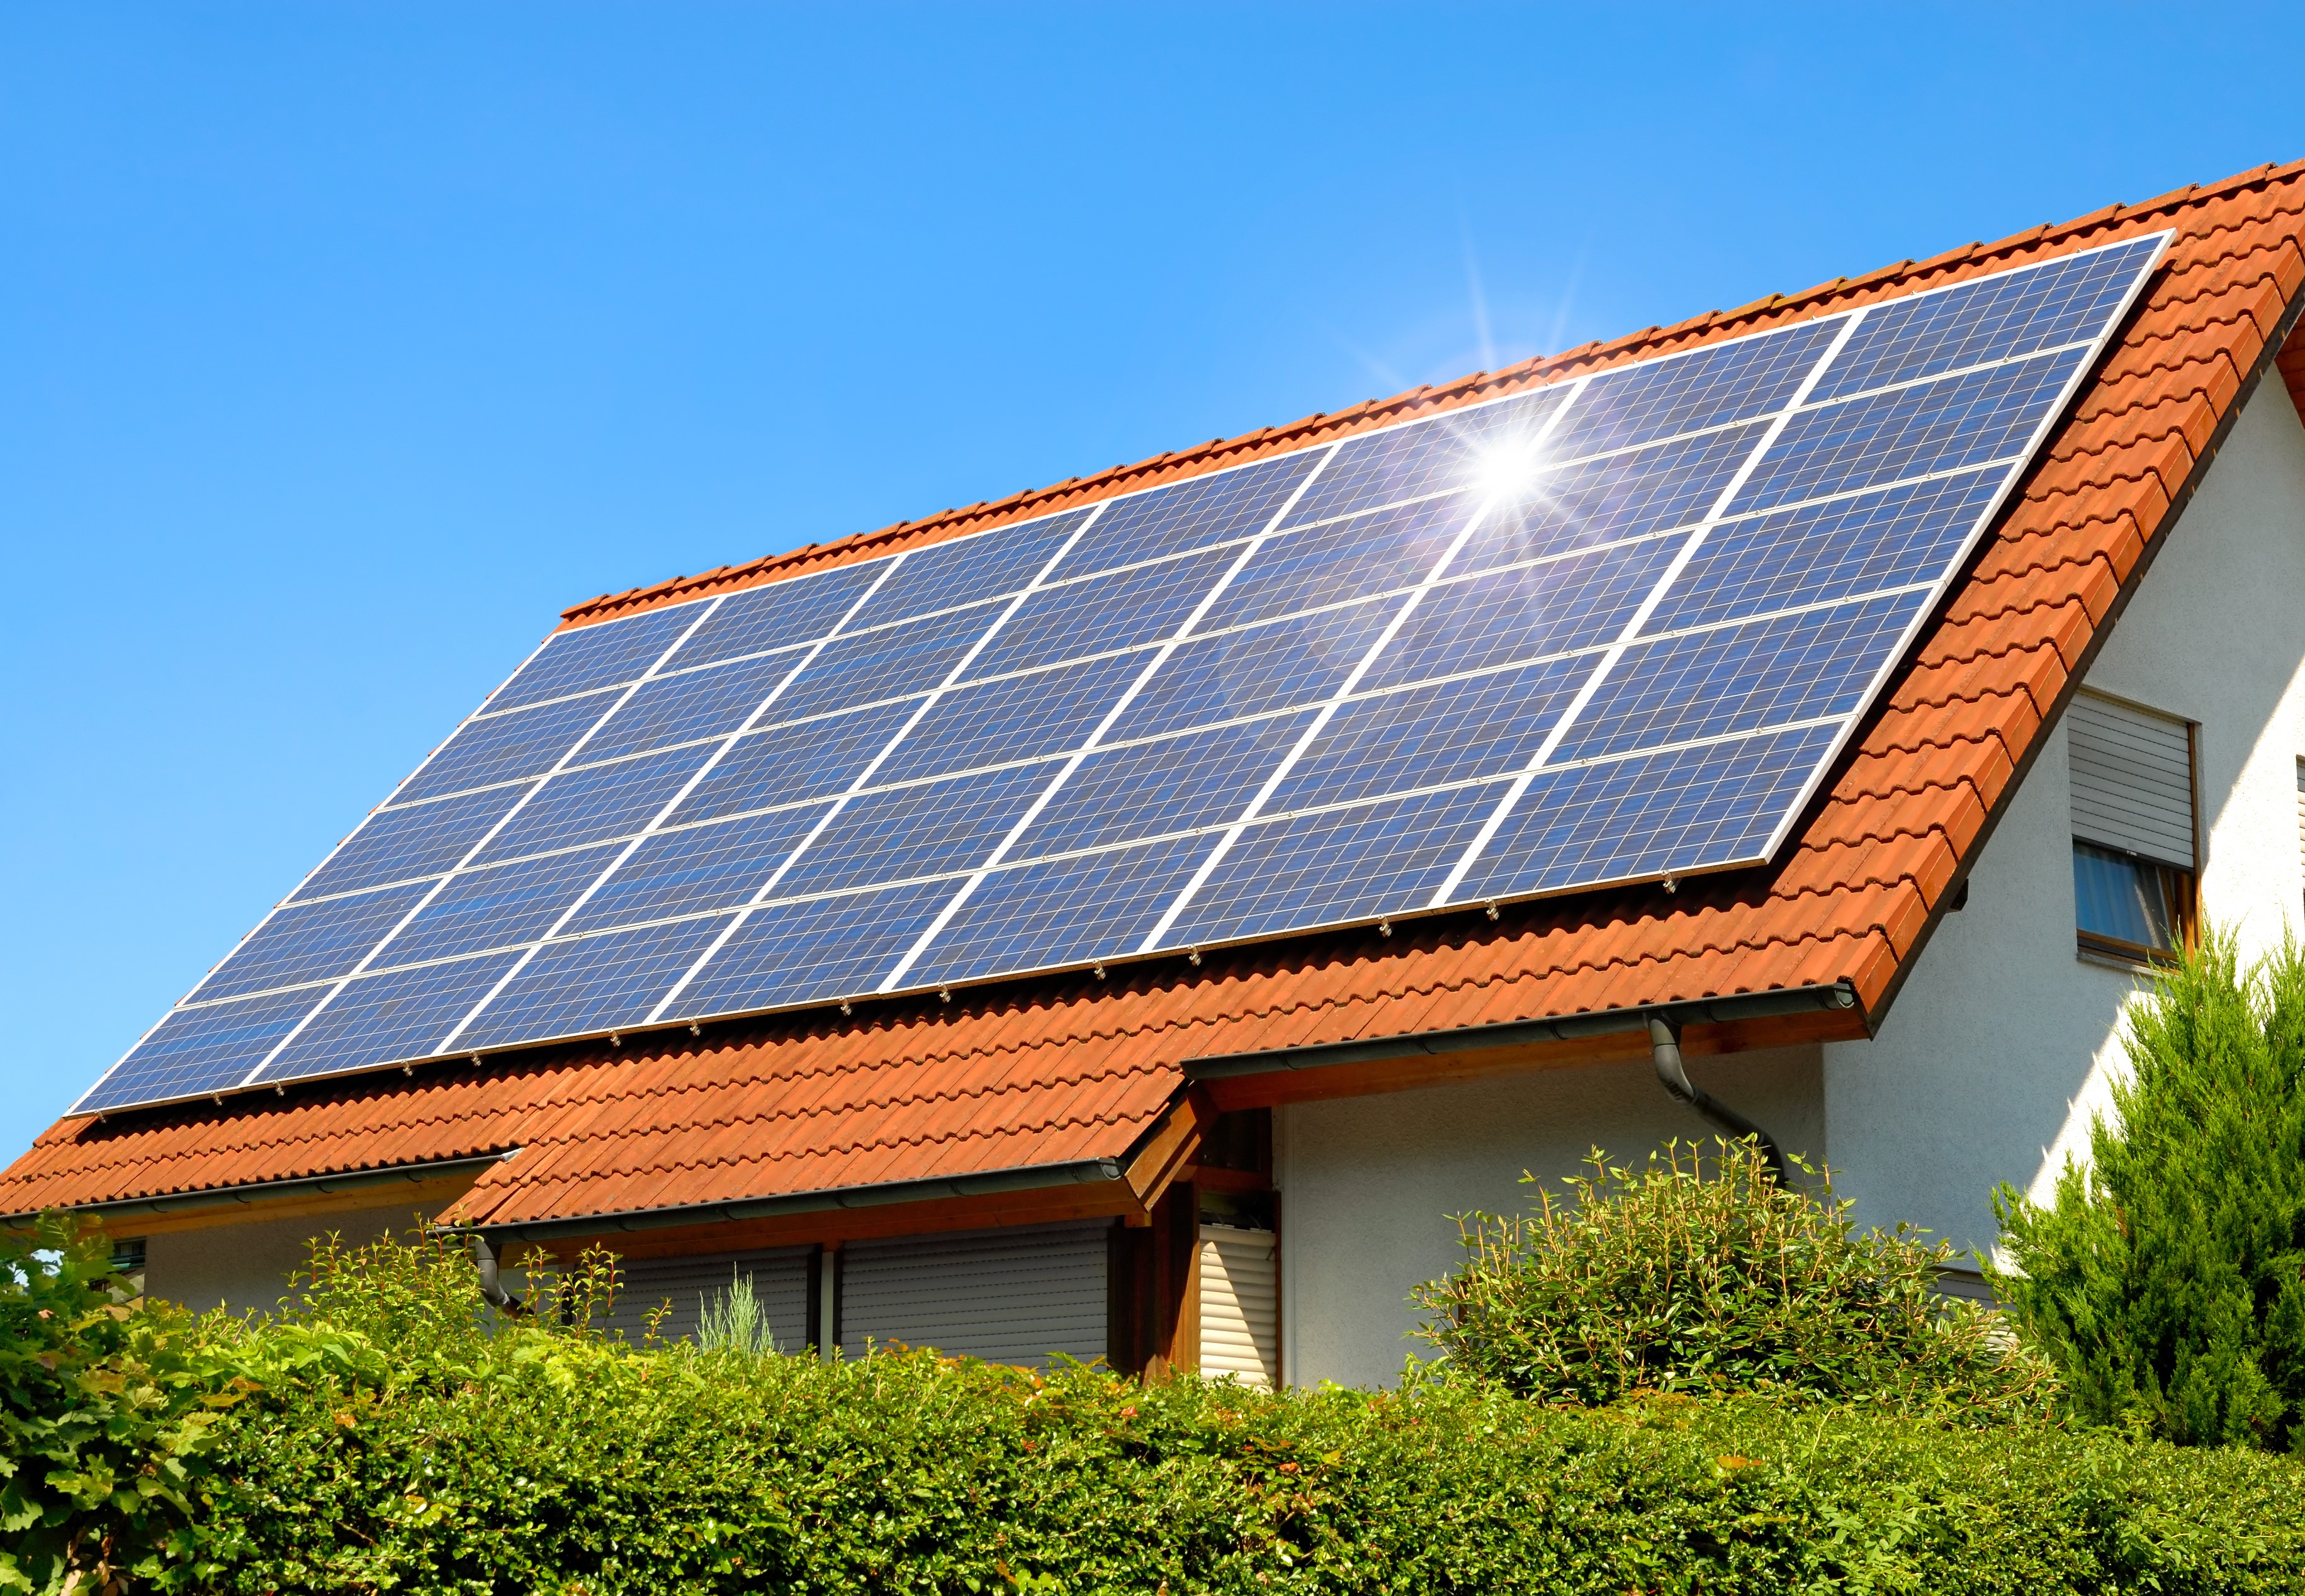 Дом с солнечными батареями на крыше